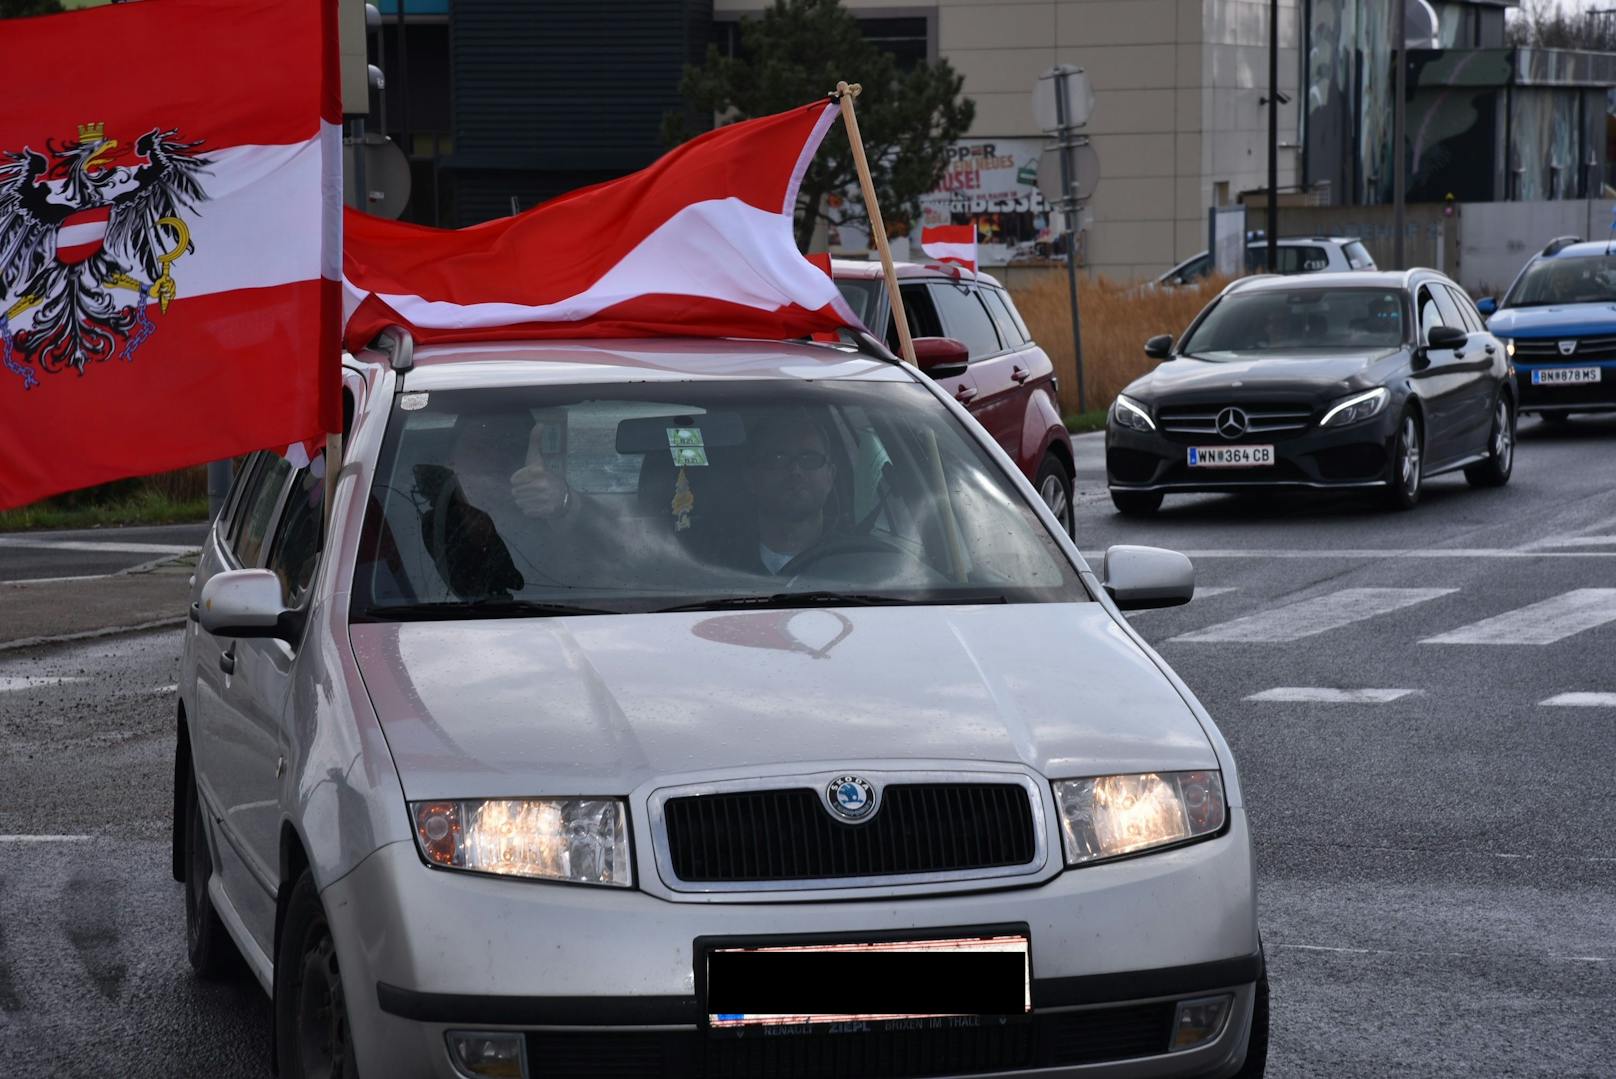 In Niederösterreich fand am Samstag (03.04.2021) eine Auto-Demo statt. 